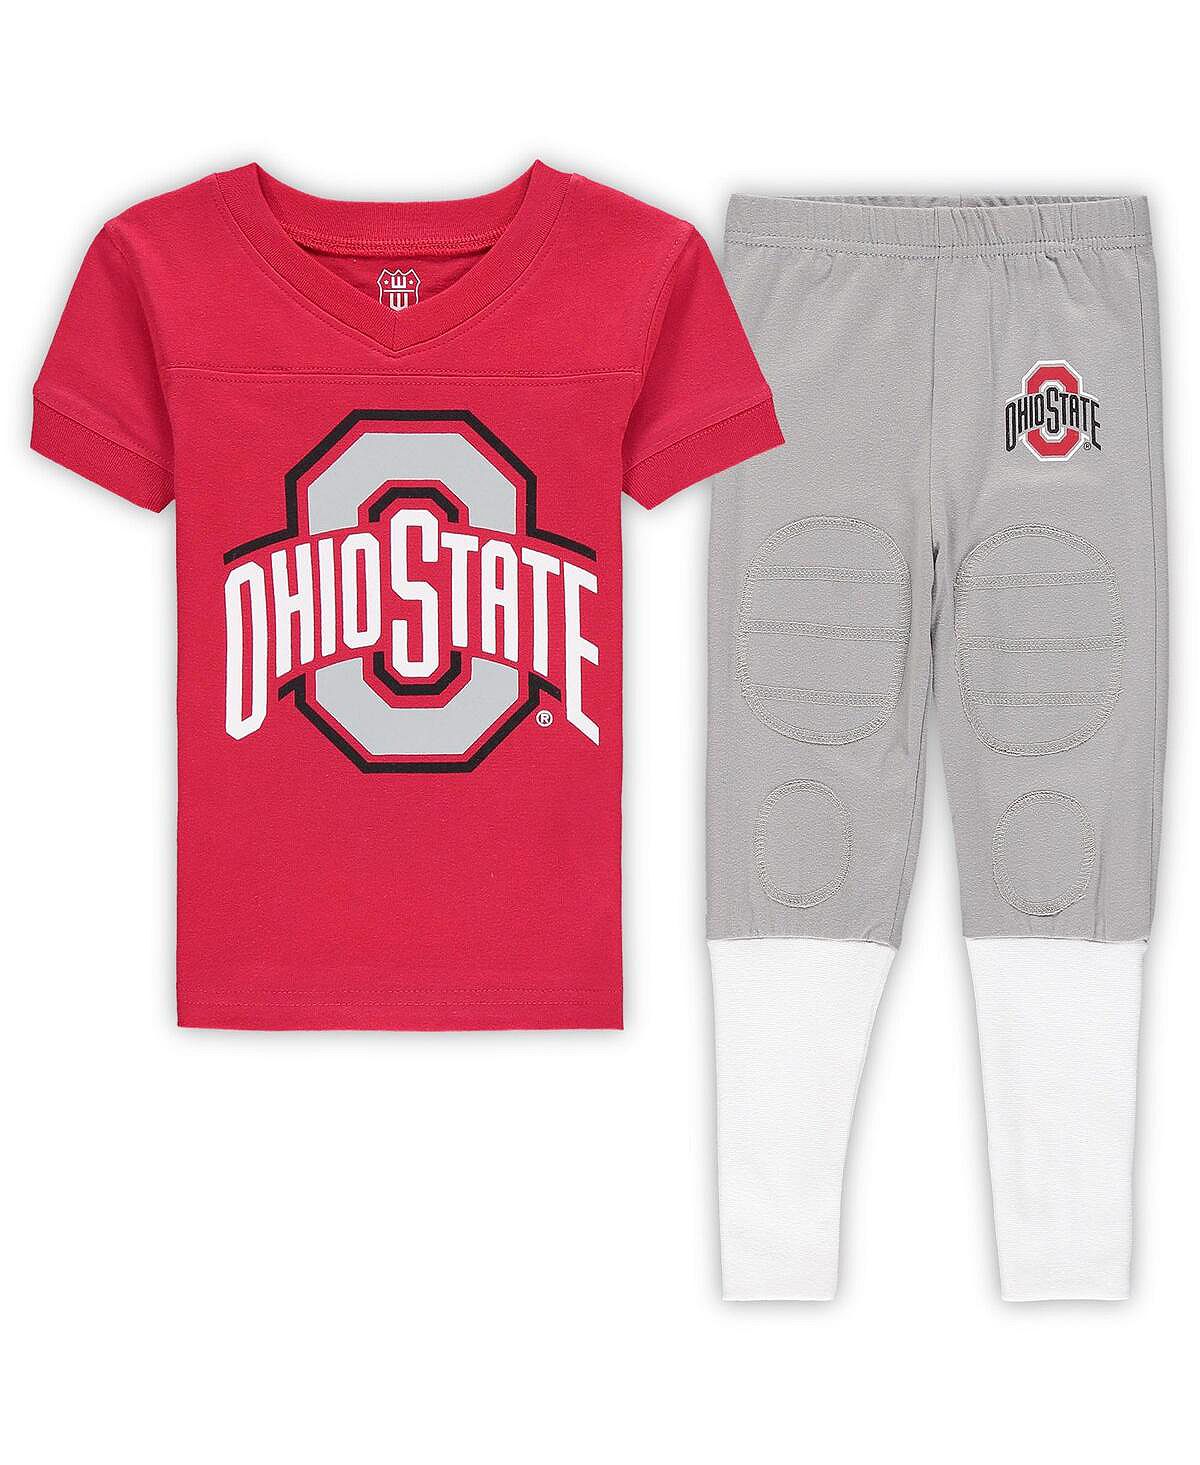 Комплект для сна с футболкой и брюками Scarlet Ohio State Buckeyes Football Player для мальчиков и девочек дошкольного возраста с v-образным вырезом Wes & Willy